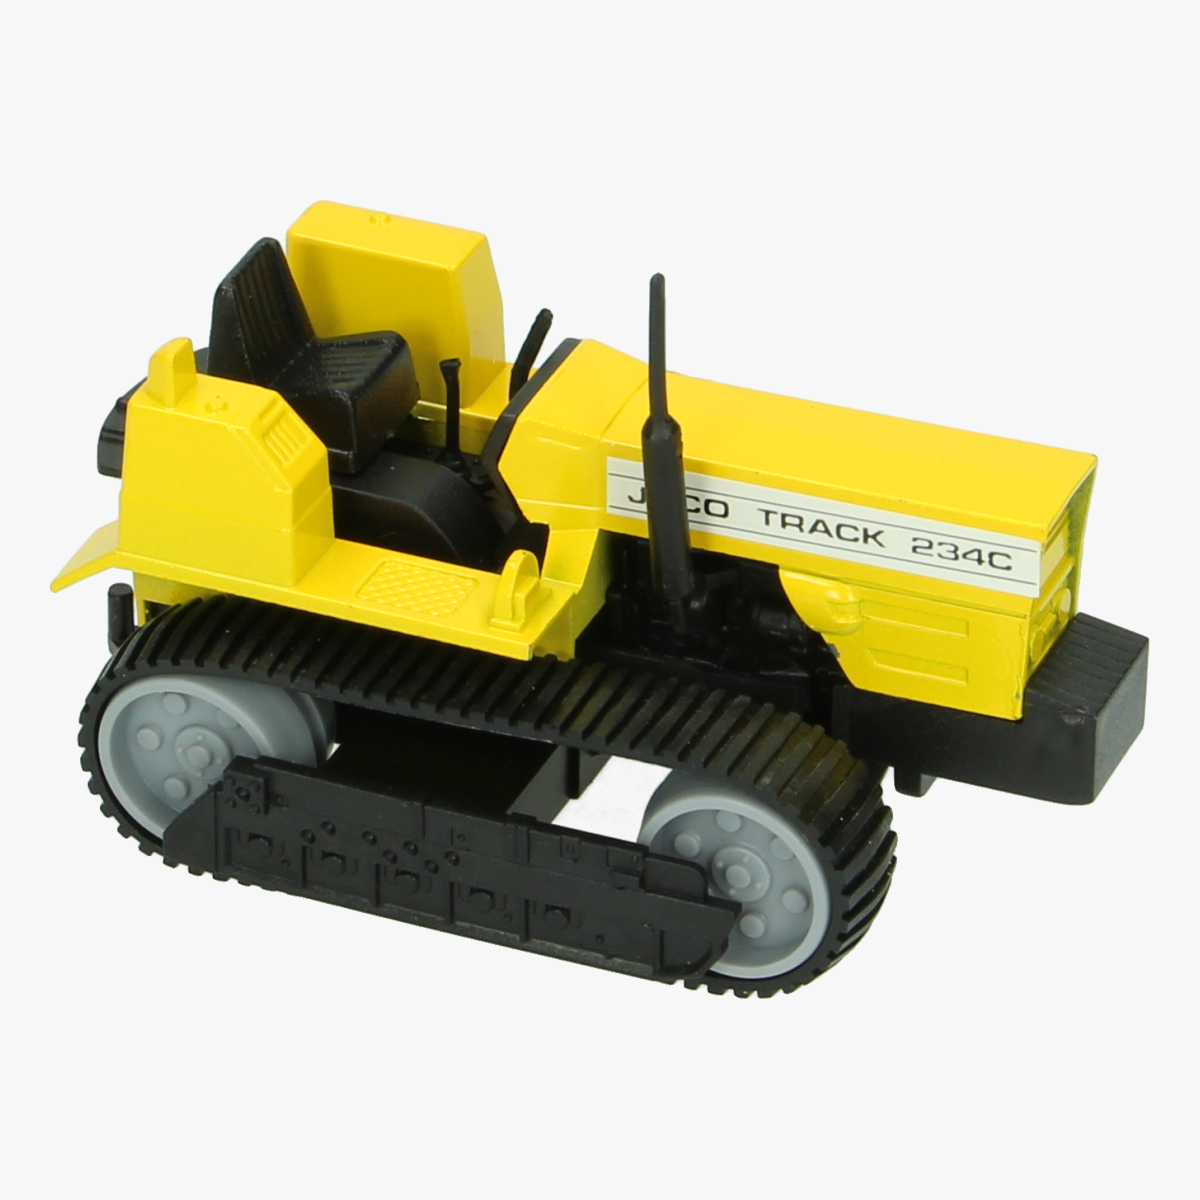 Afbeeldingen van Miniatuur Bulldozer tractor